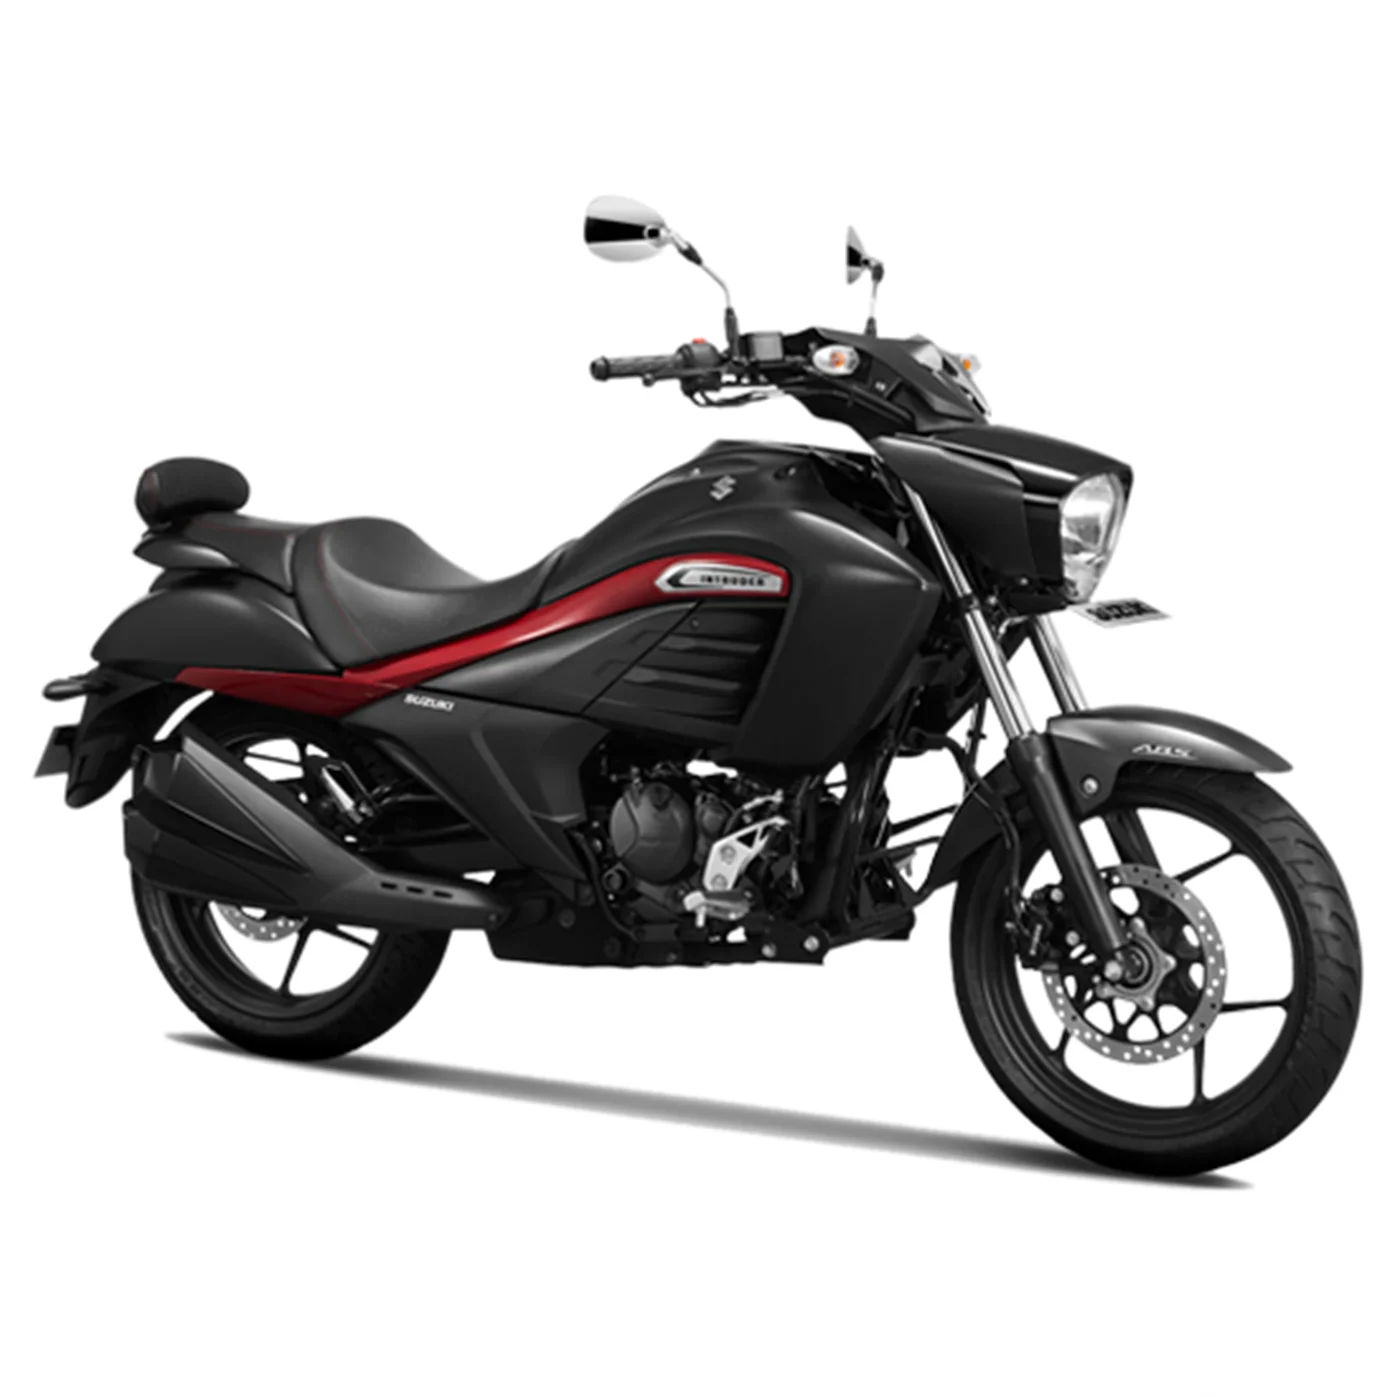 brand new india suzuki intruder150 abs motorcycle